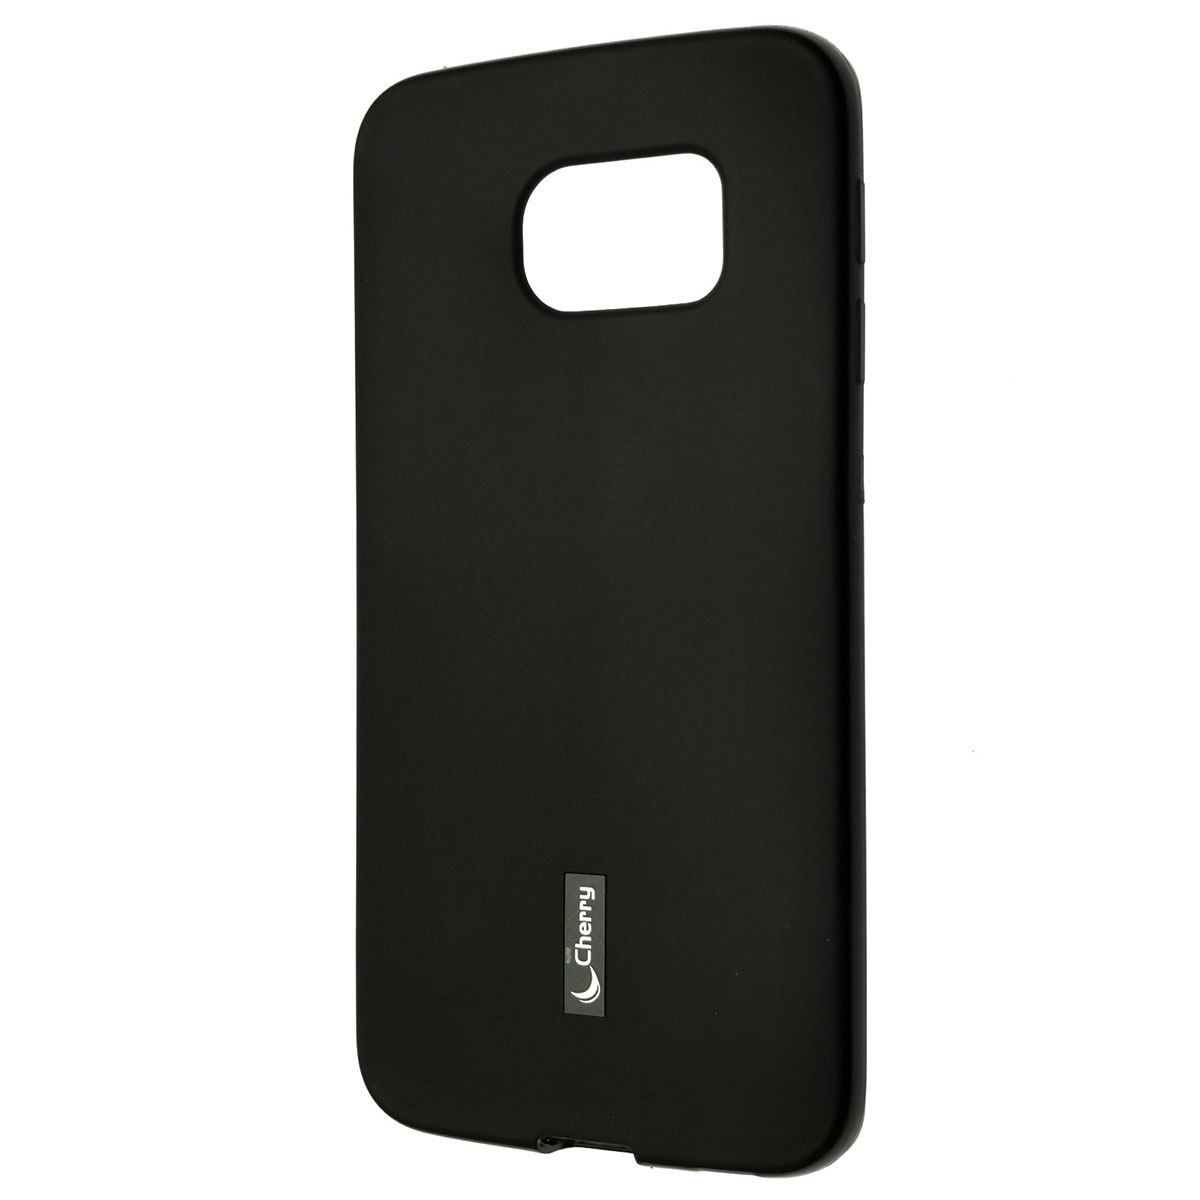 Чехол накладка Cherry для SAMSUNG Galaxy S6 Edge, силикон, цвет черный.